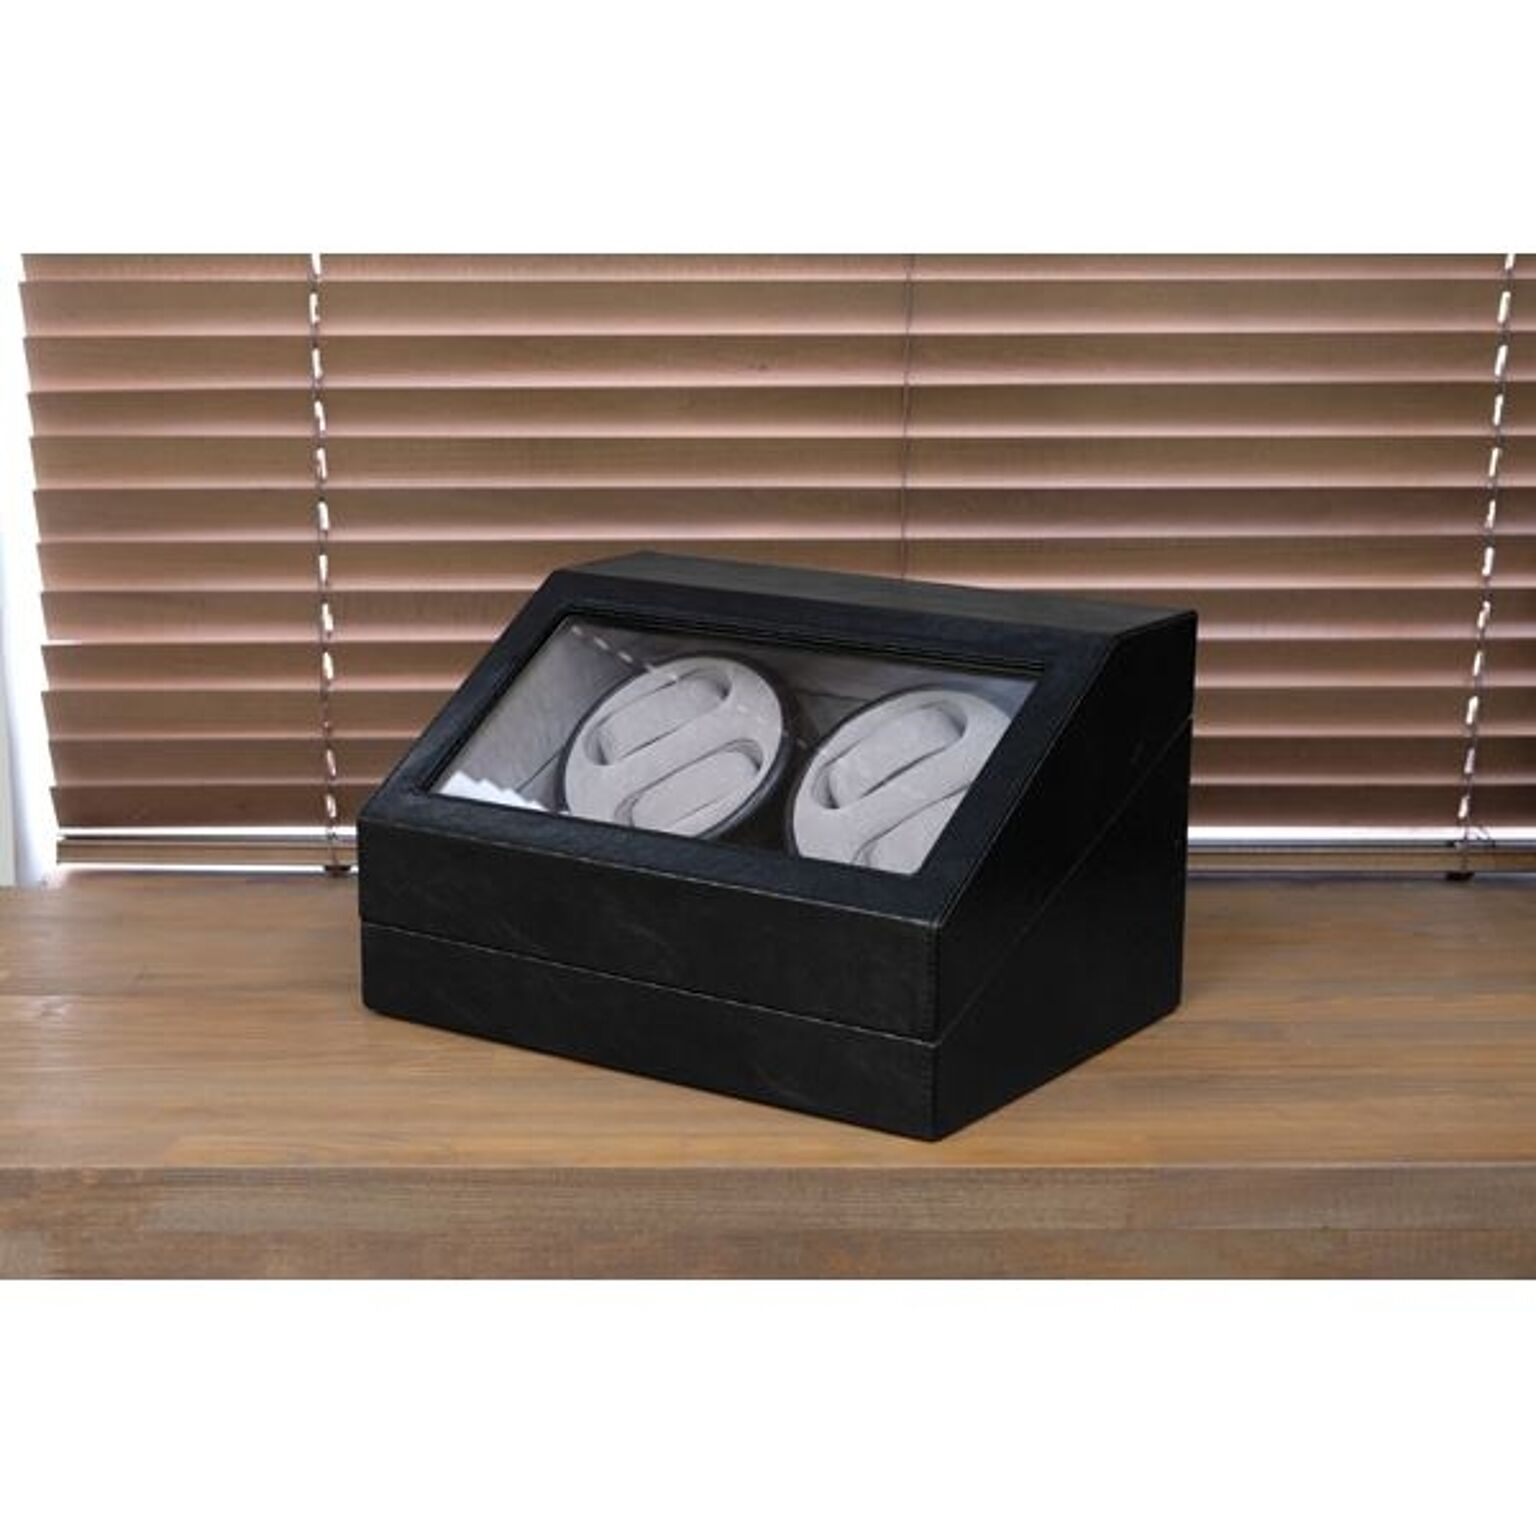 腕時計用 ワインディングマシーン 4本巻 幅34cm ブラック 電源スイッチ 合皮 自動巻時計専用 ウォッチ 電動振動装置 完成品